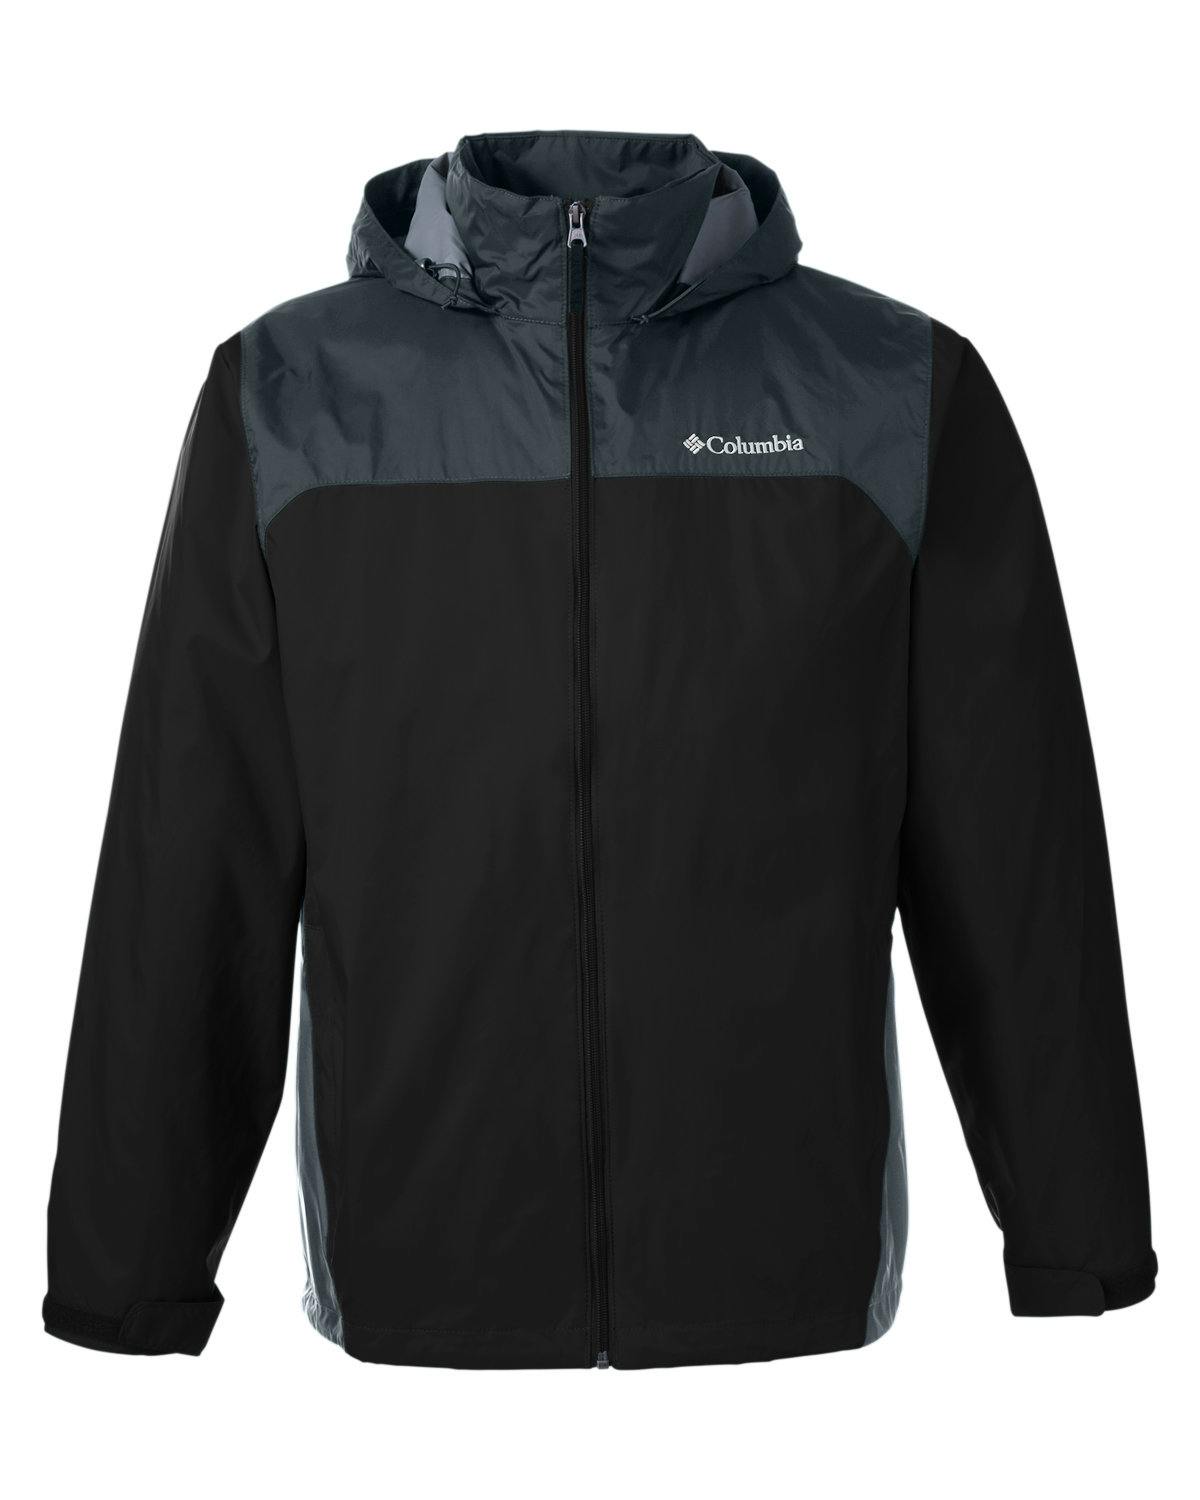 Image for Men's Glennaker Lake™ Rain Jacket